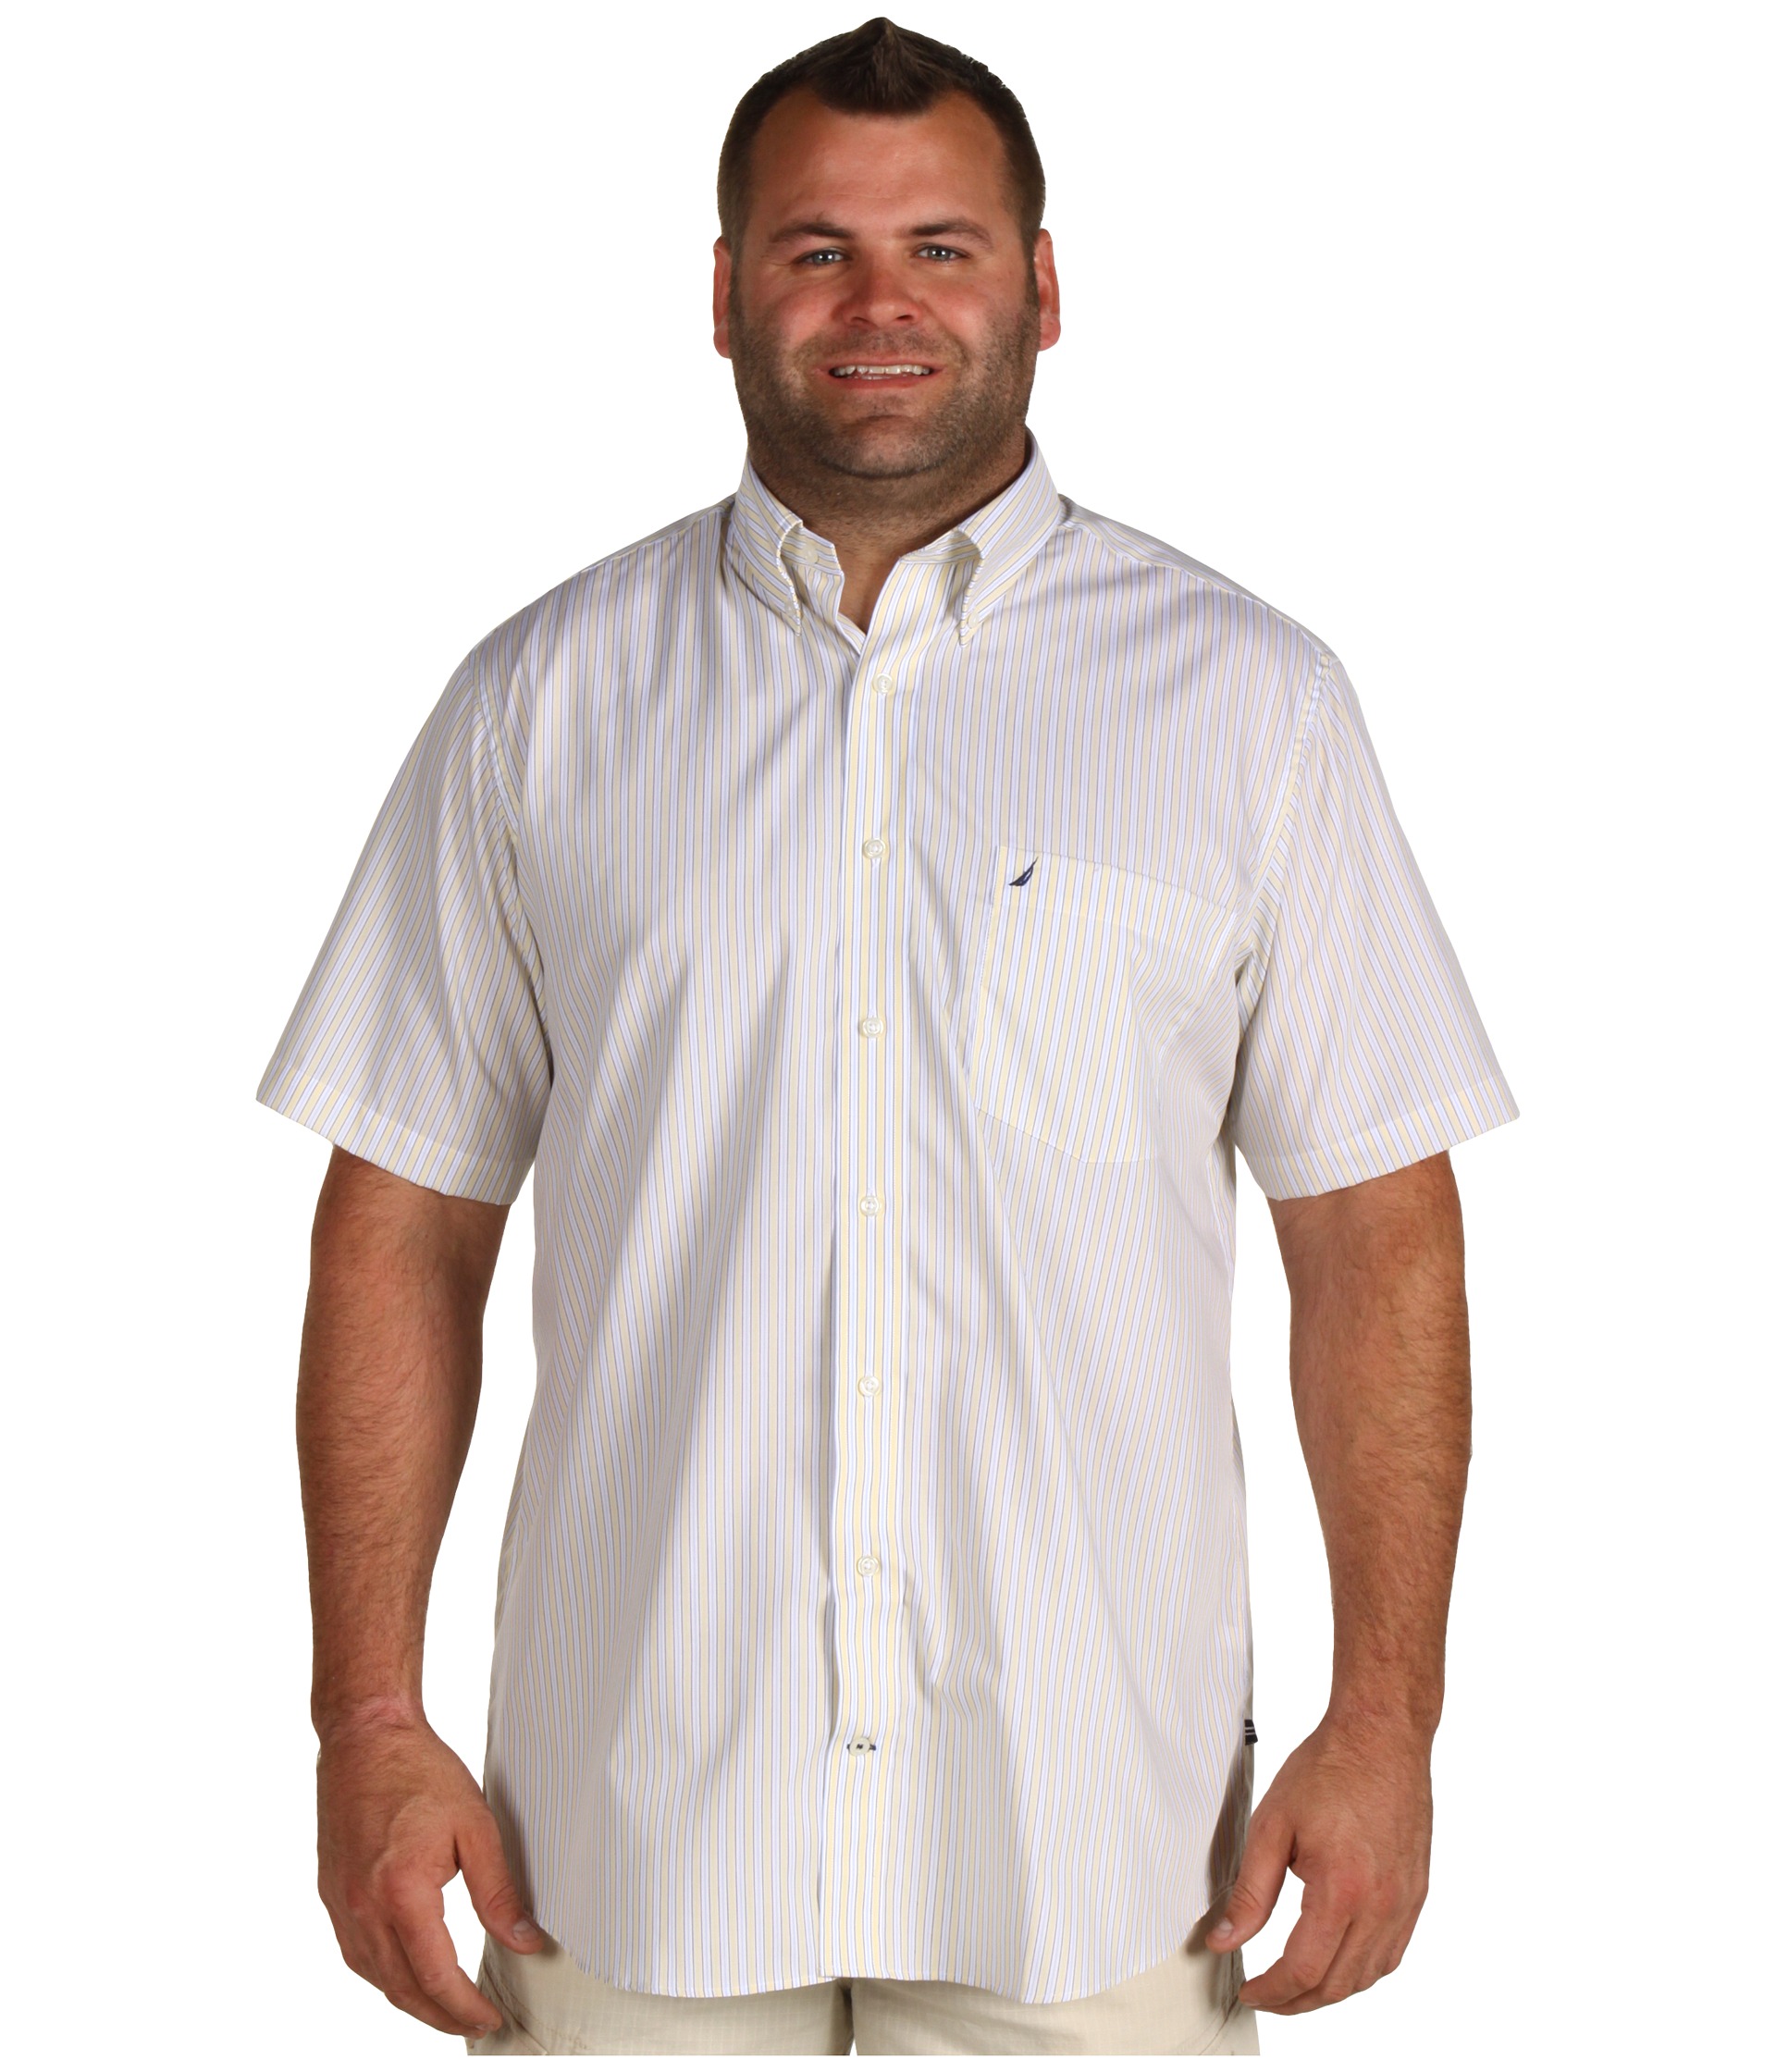 Nautica Big & Tall   Big & Tall S/S Saturated Stripe Shirt